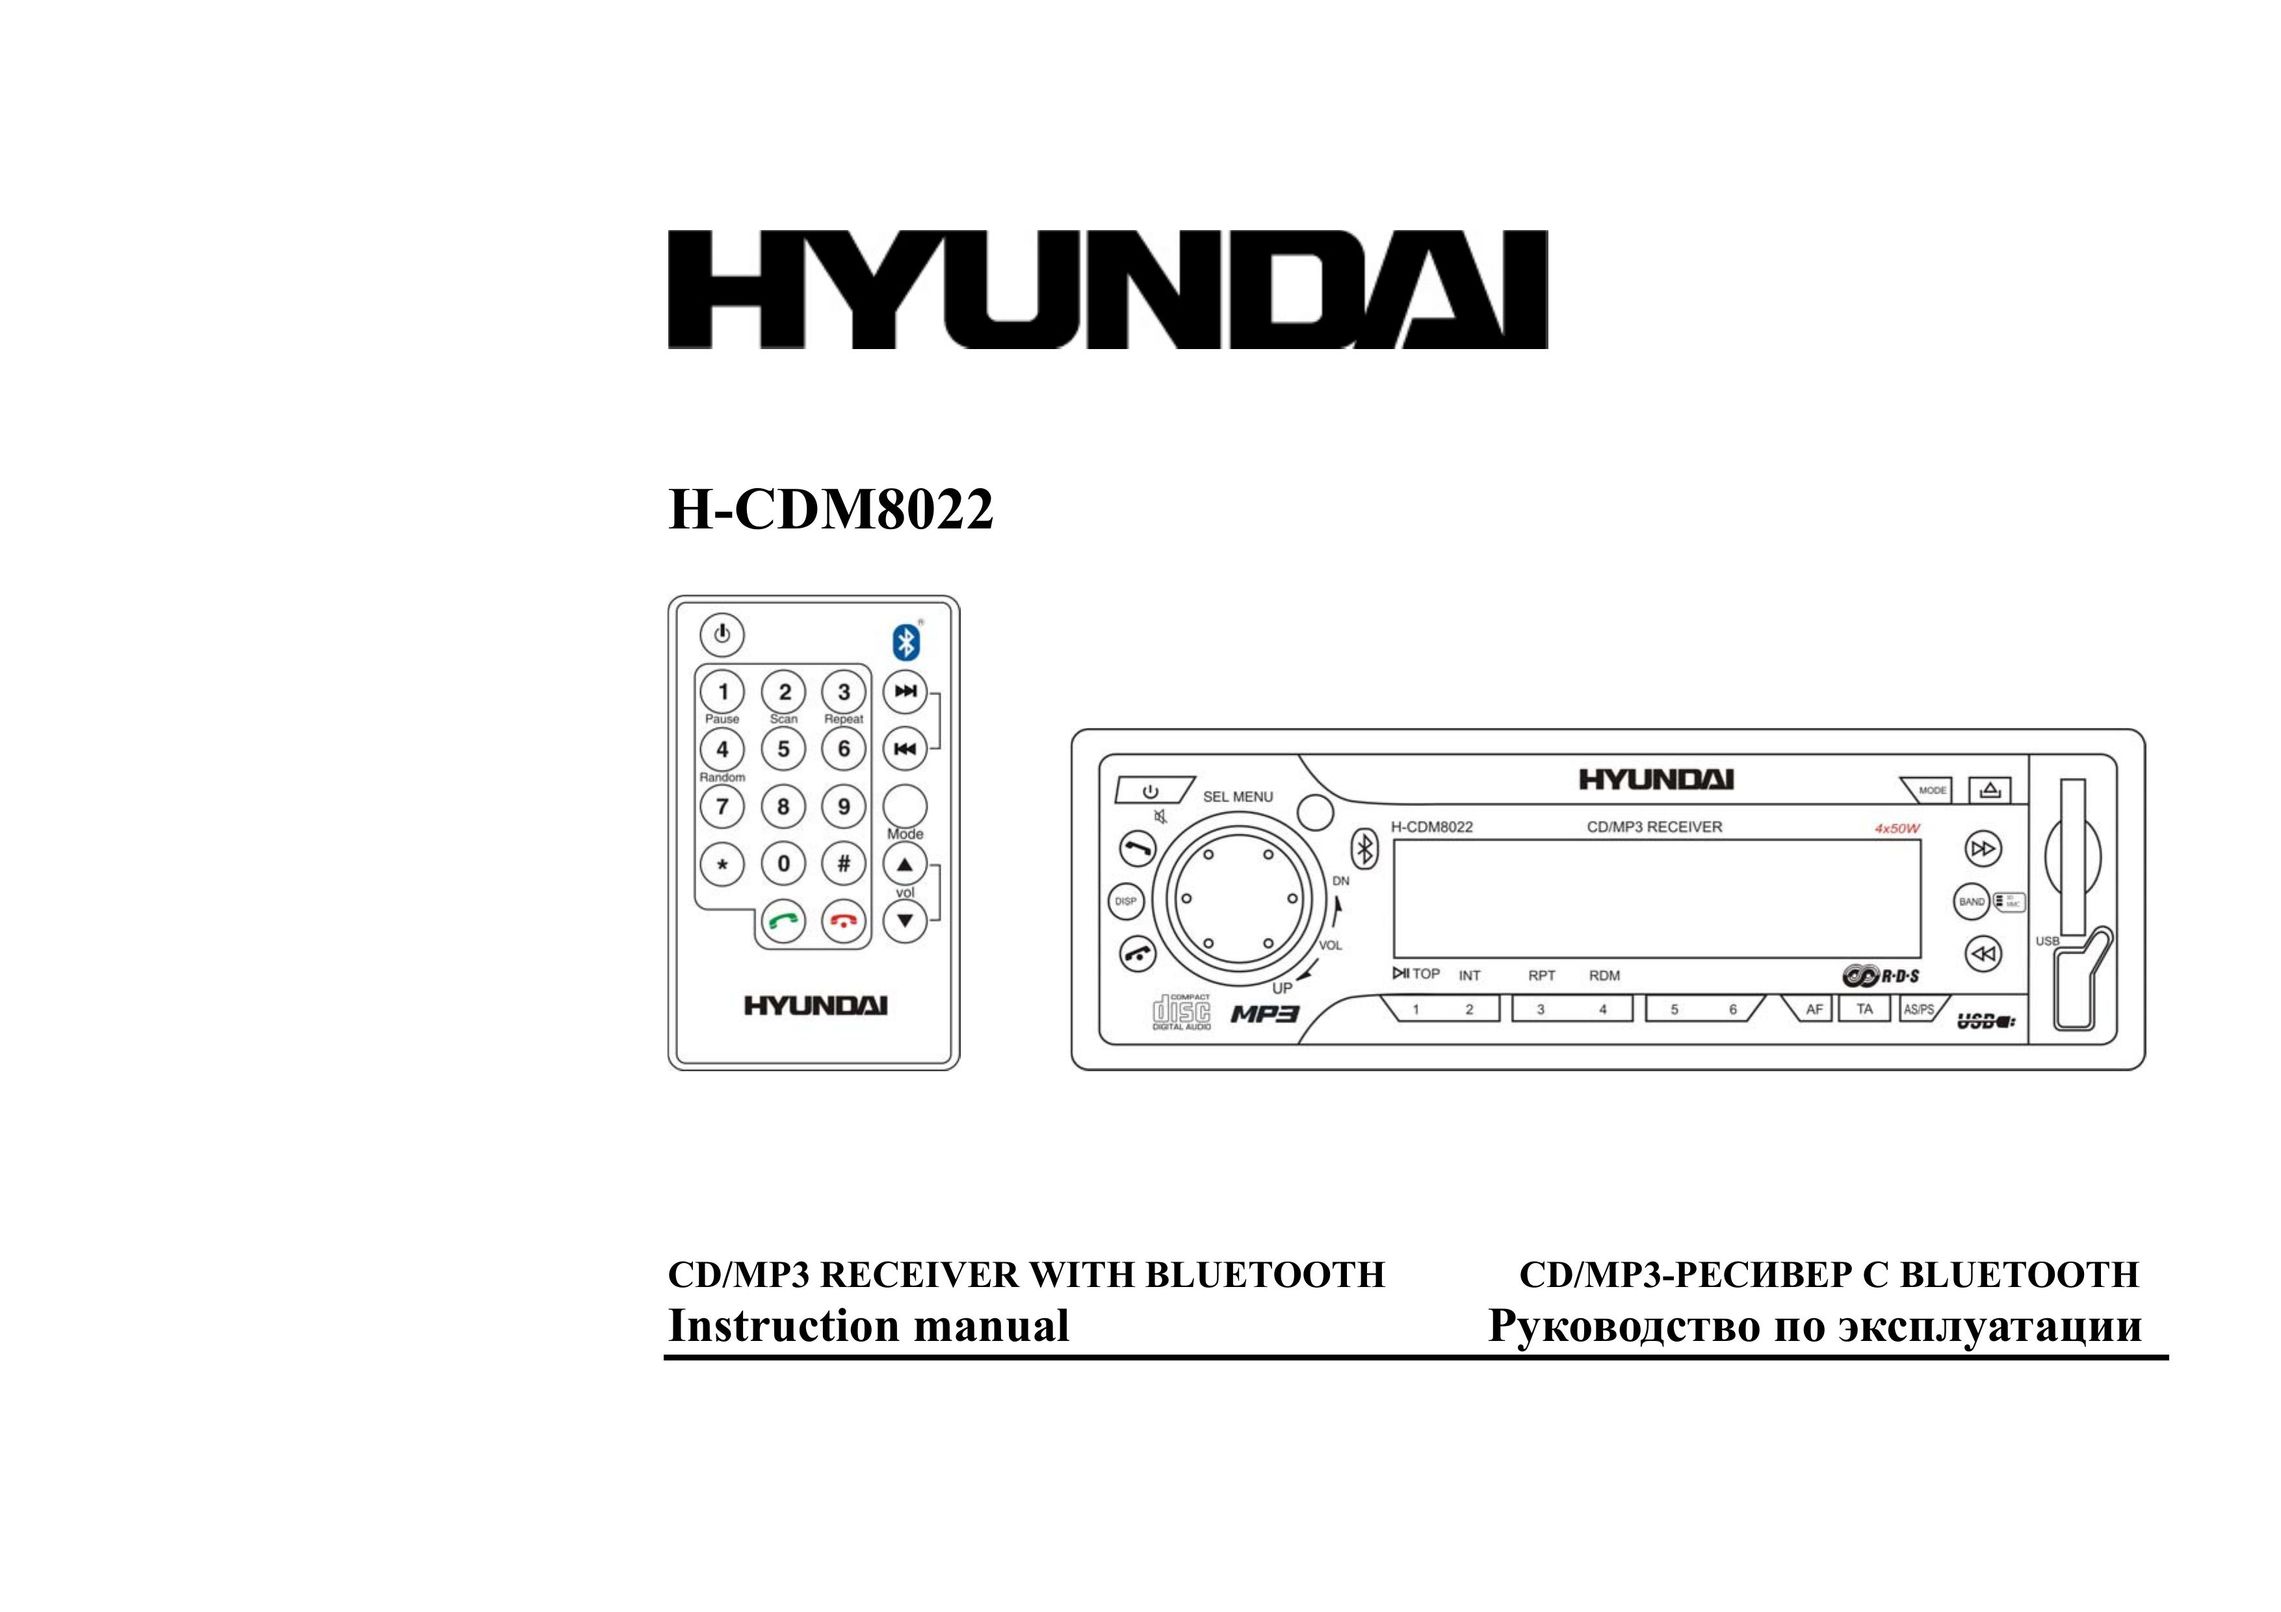 Hyundai H-CDM8022 Car Stereo System User Manual